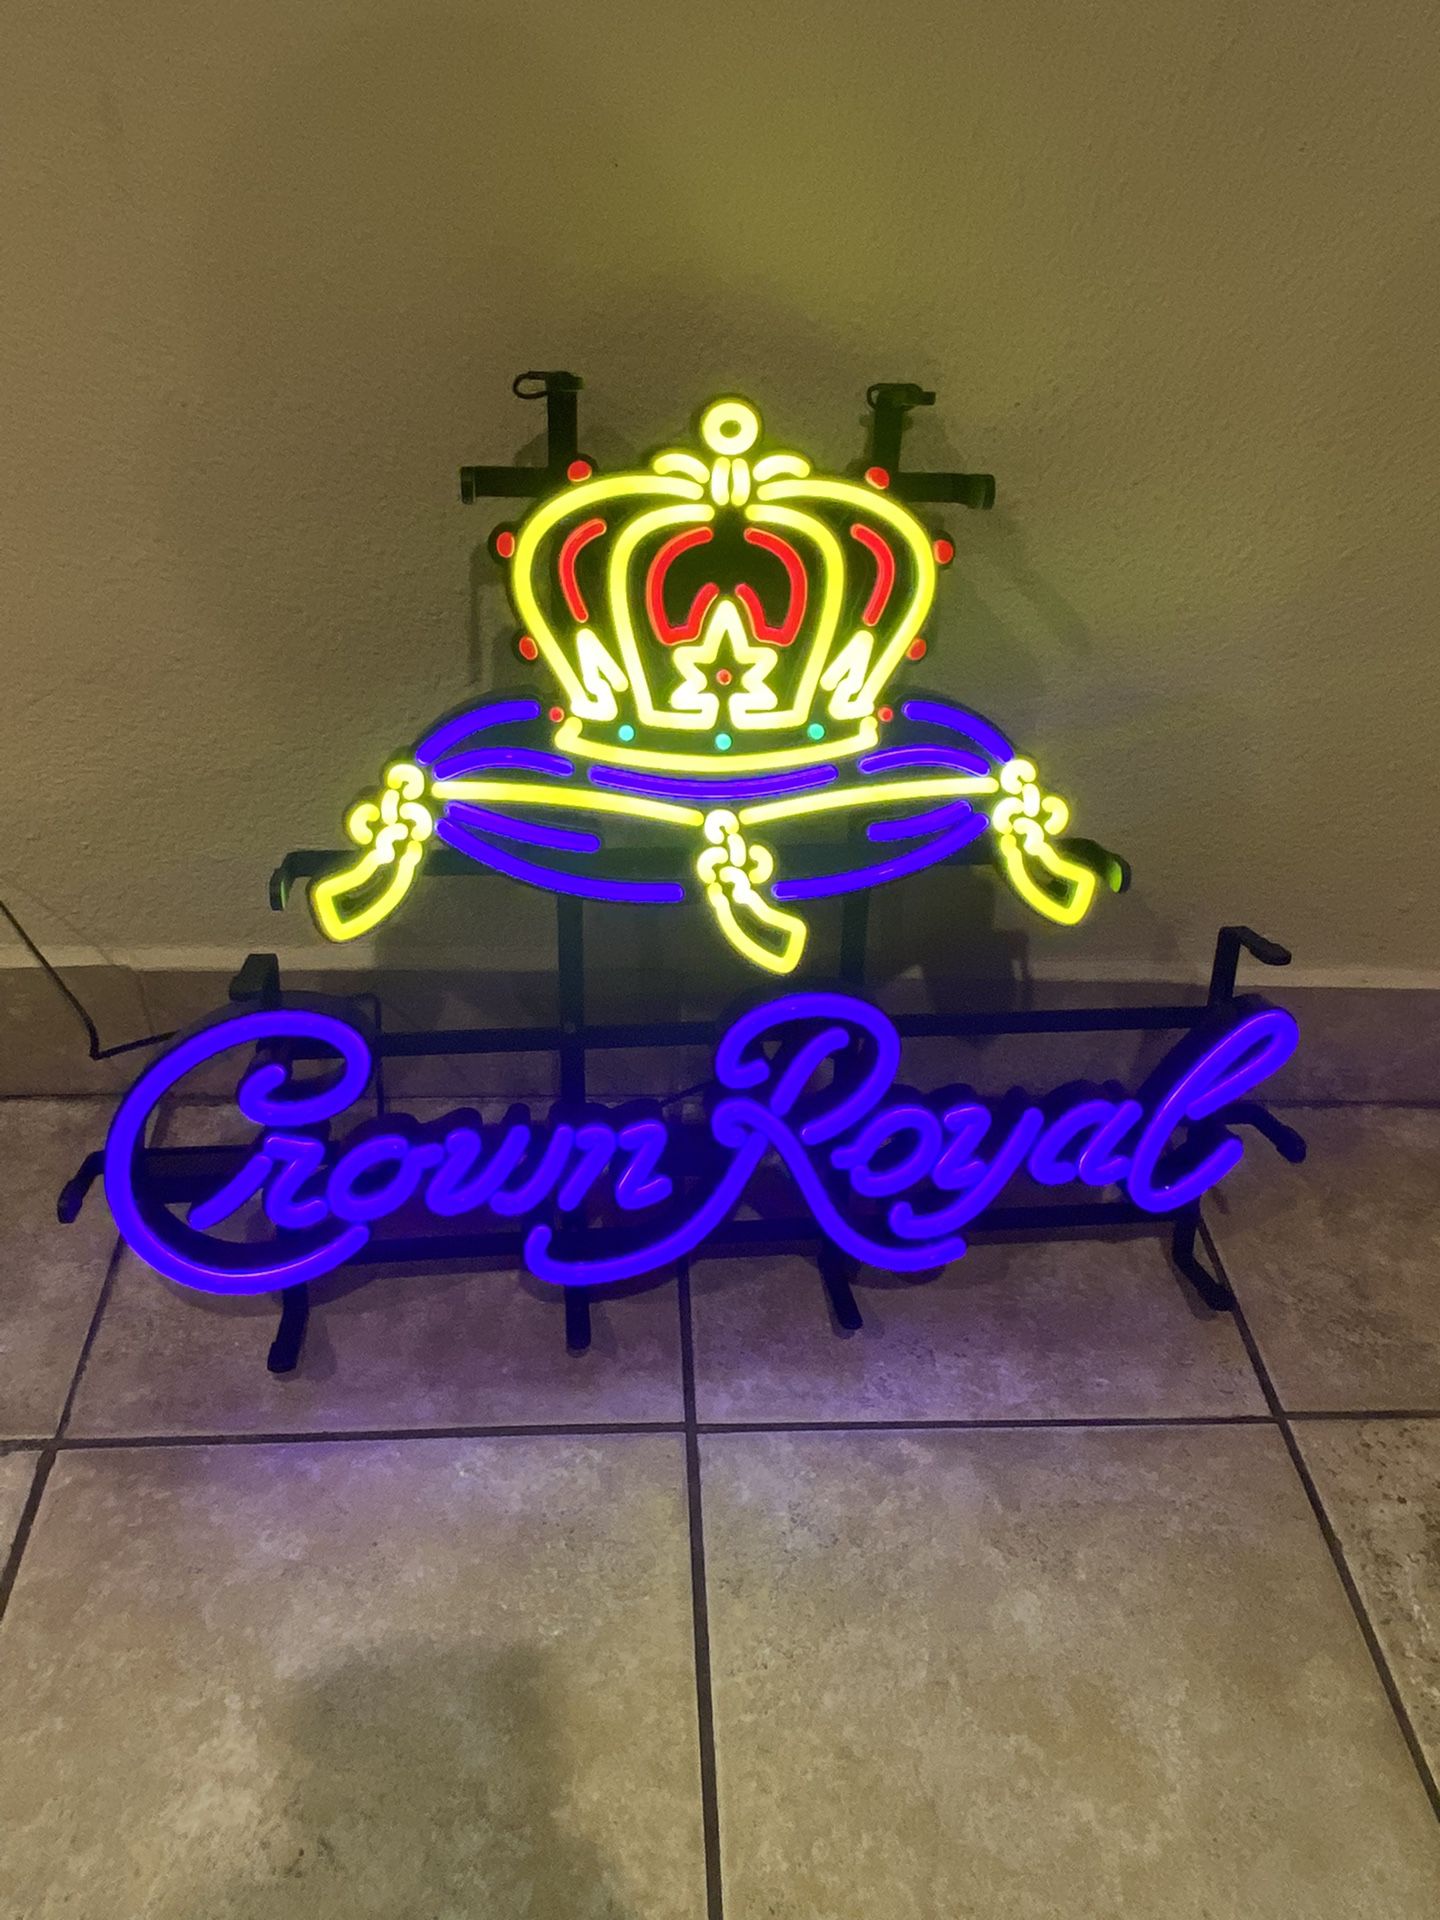 Crown royal Display light up sign crown royal Man Cave sign tiki bar sign liquor sign Liquor a Display sign